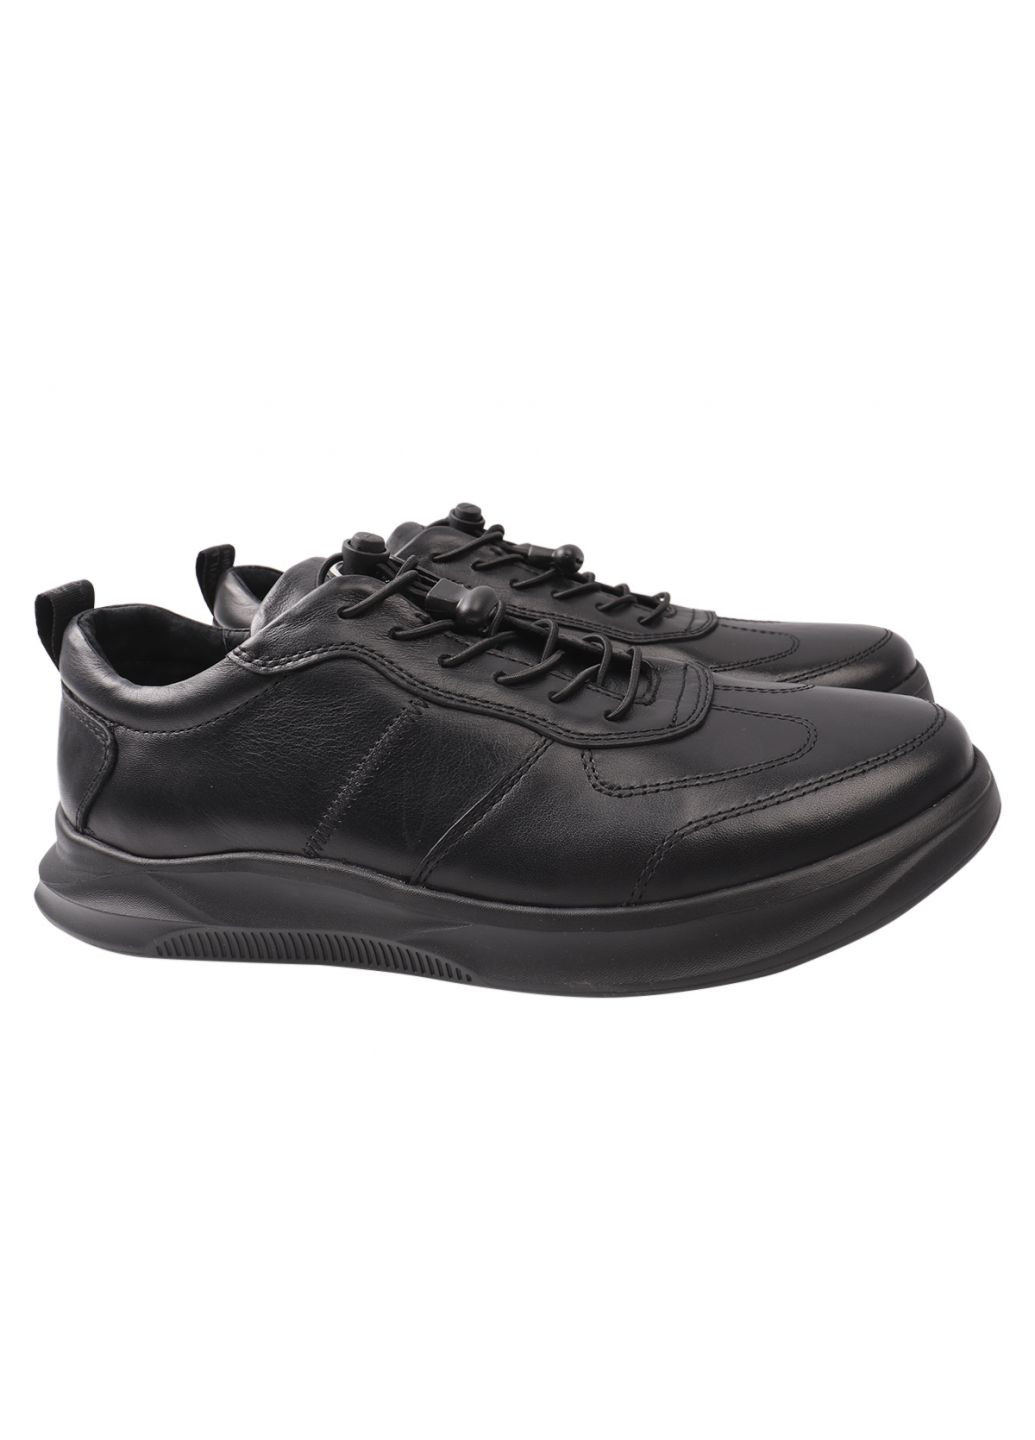 Черные кроссовки мужские из натуральной кожи, на низком ходу, на шнуровке, цвет черный, Marion 27-21DTS